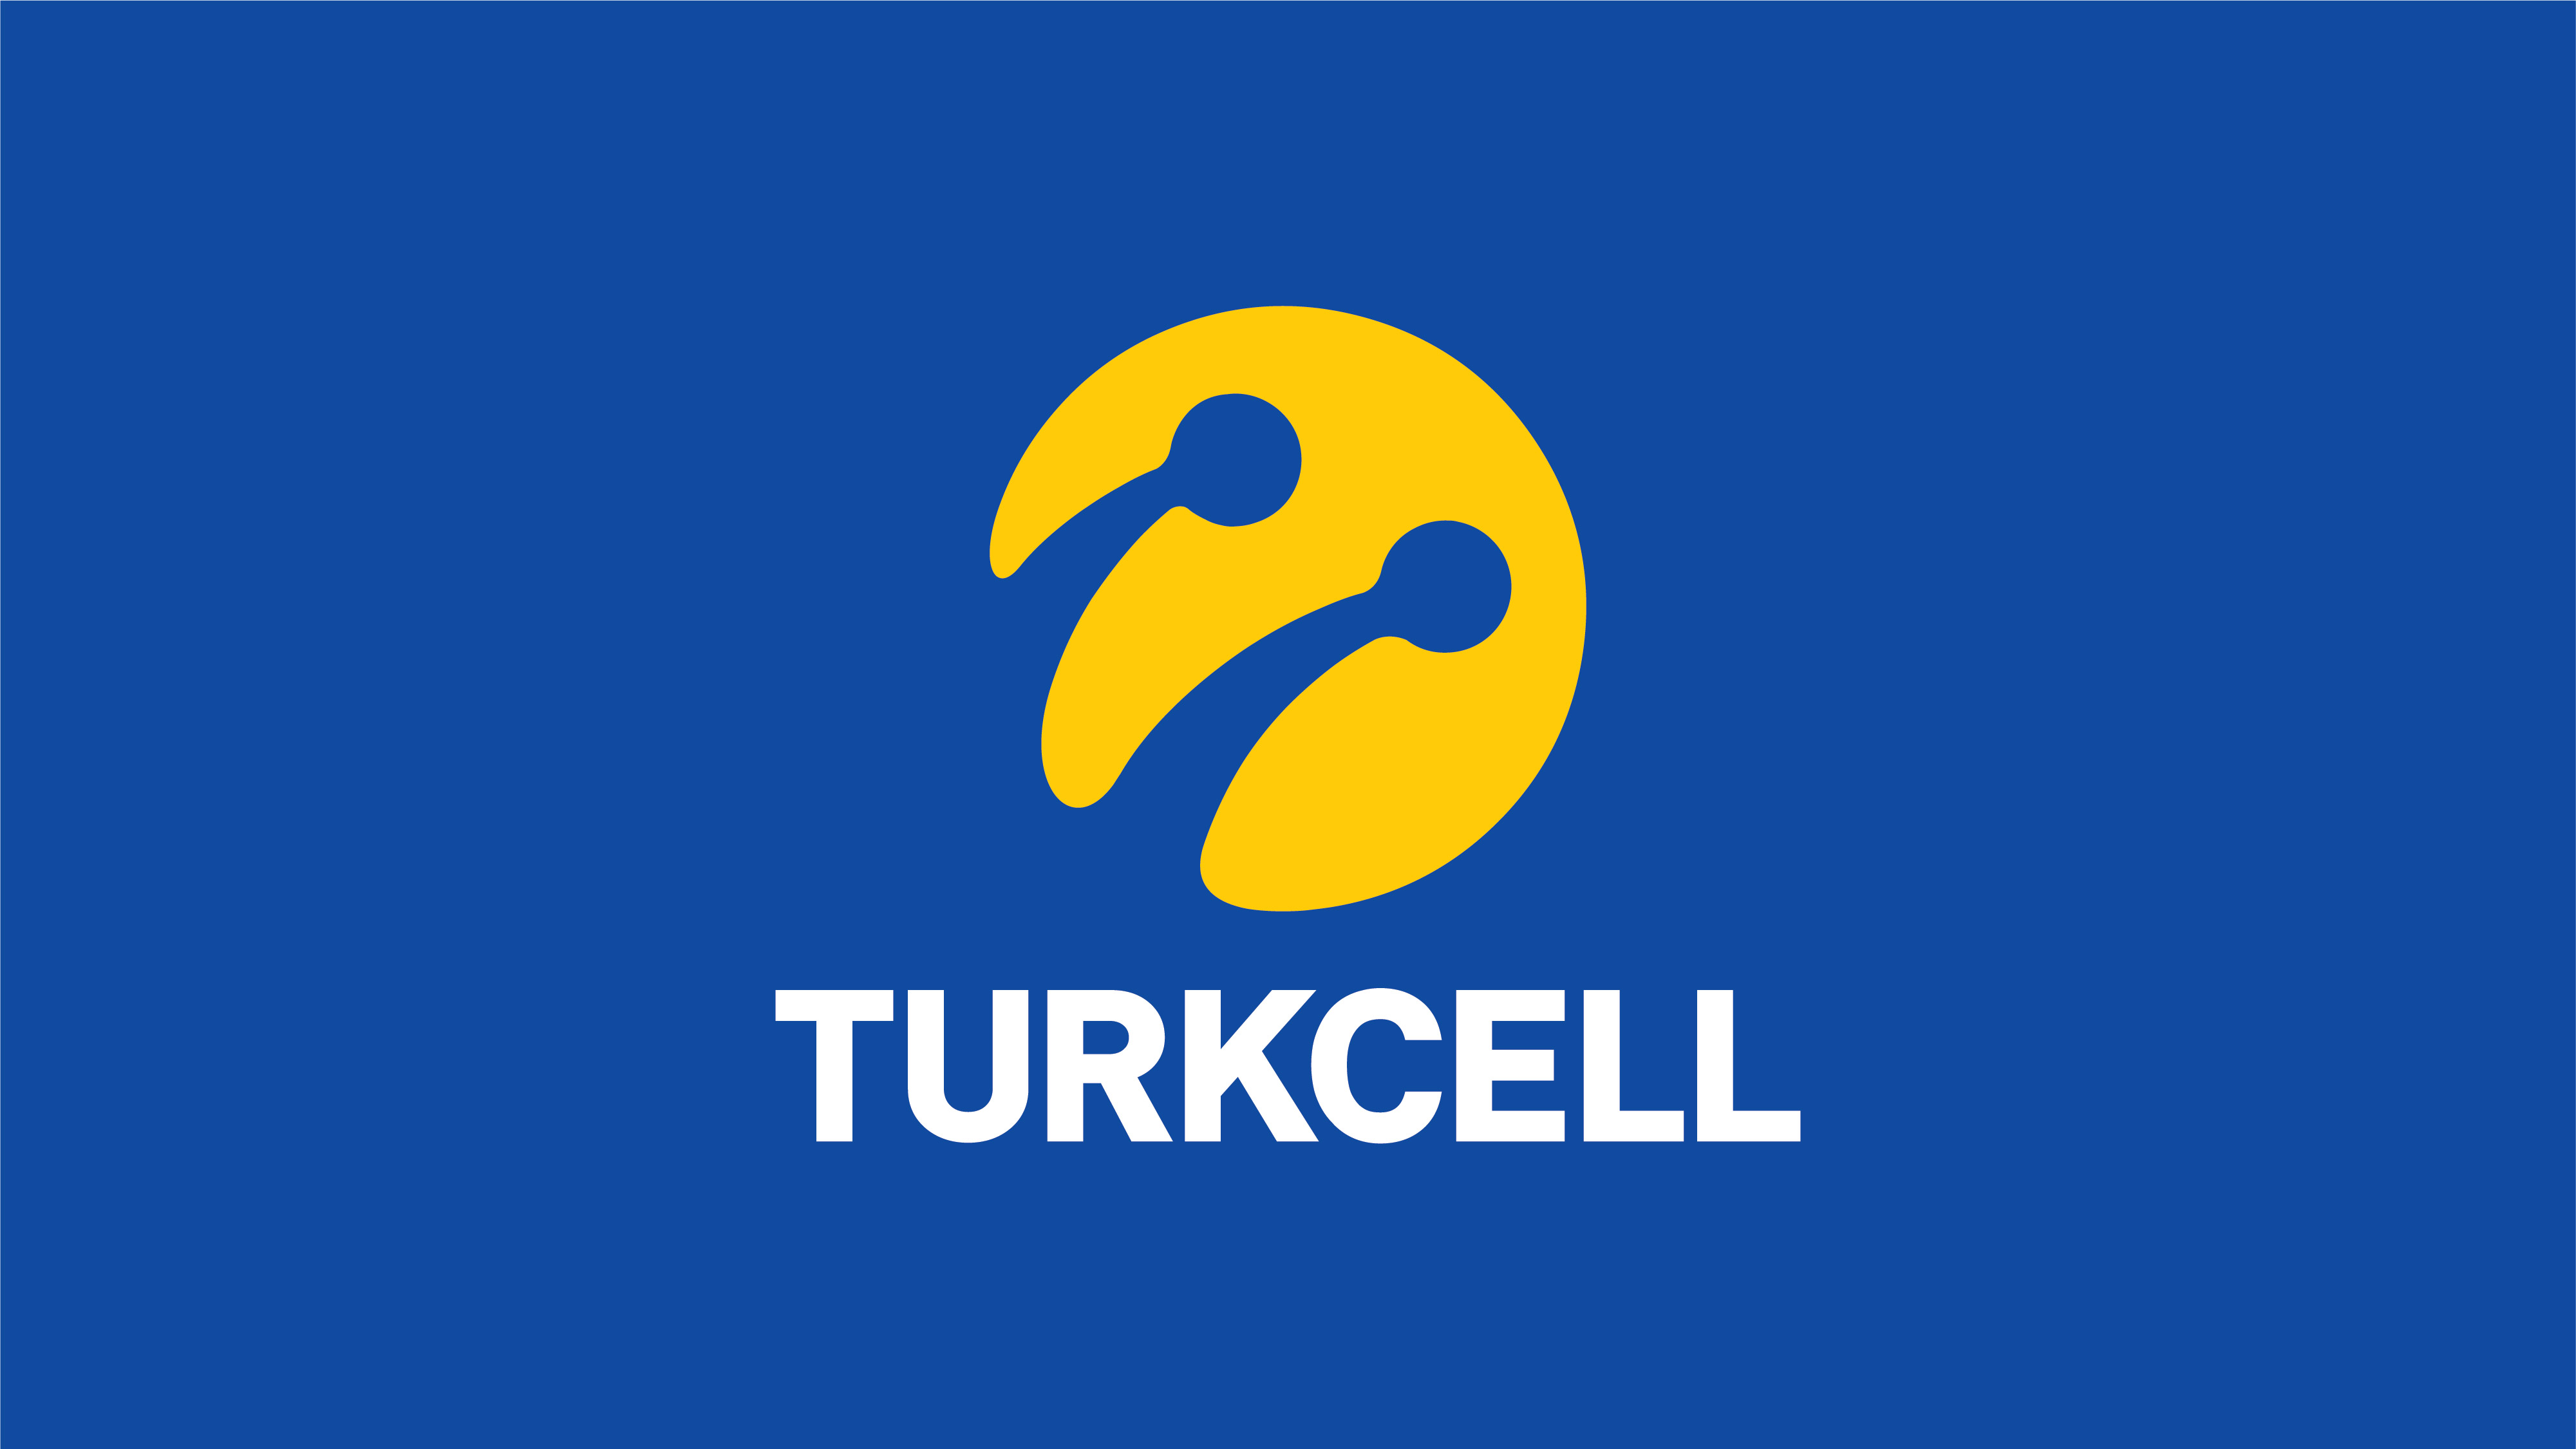 Turkcell’in En Büyük Hissedarı Varlık Fonu İle Görüşüyor